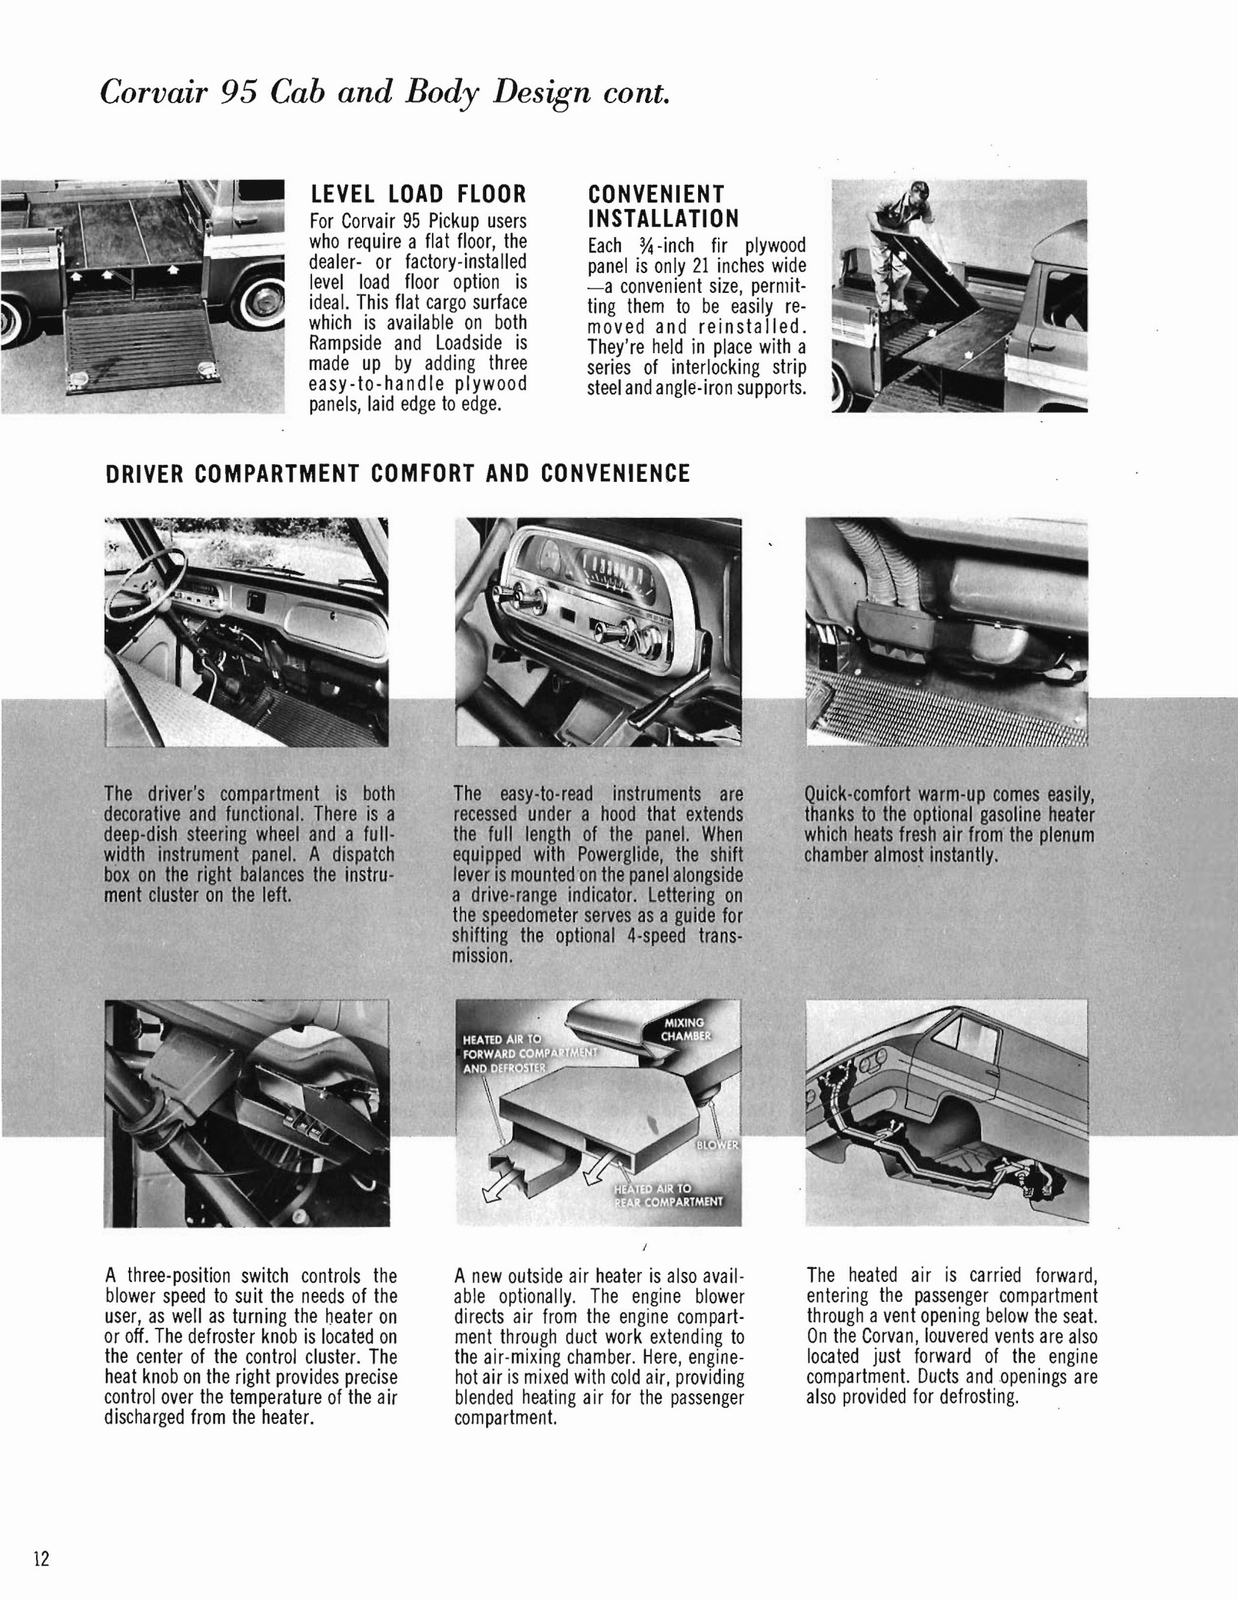 n_1961 Chevrolet Trucks Booklet-12.jpg